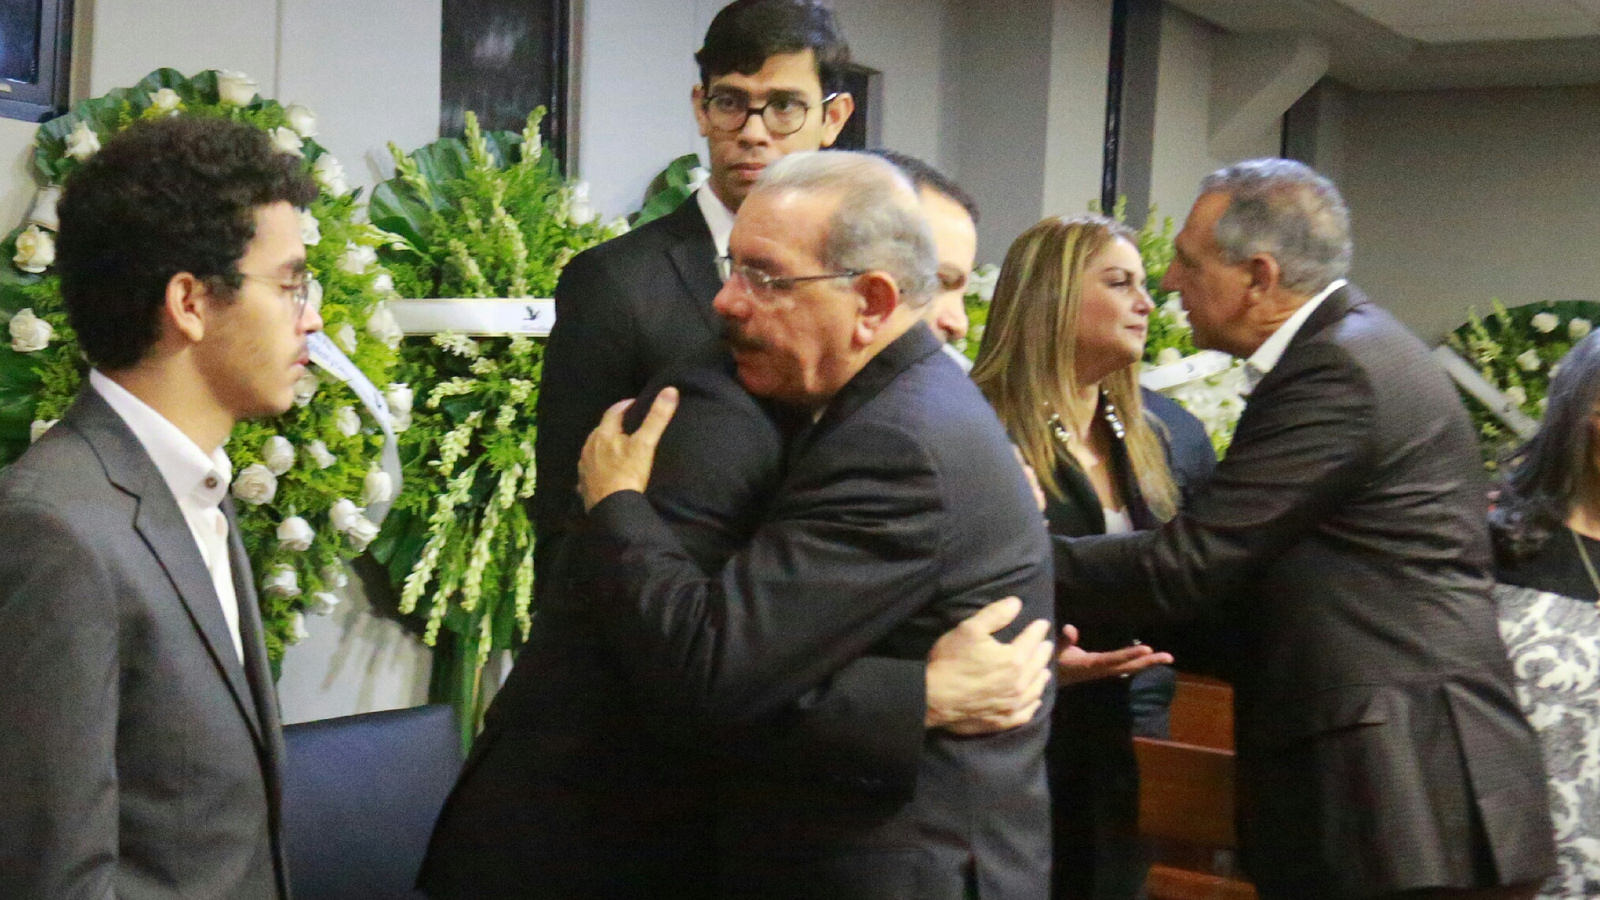 REPÚBLICA DOMINICANA: Danilo Medina acude a funeraria en solidaridad con familiares líder sindical Luis Henry Molina: Lamentamos mucho su pérdida